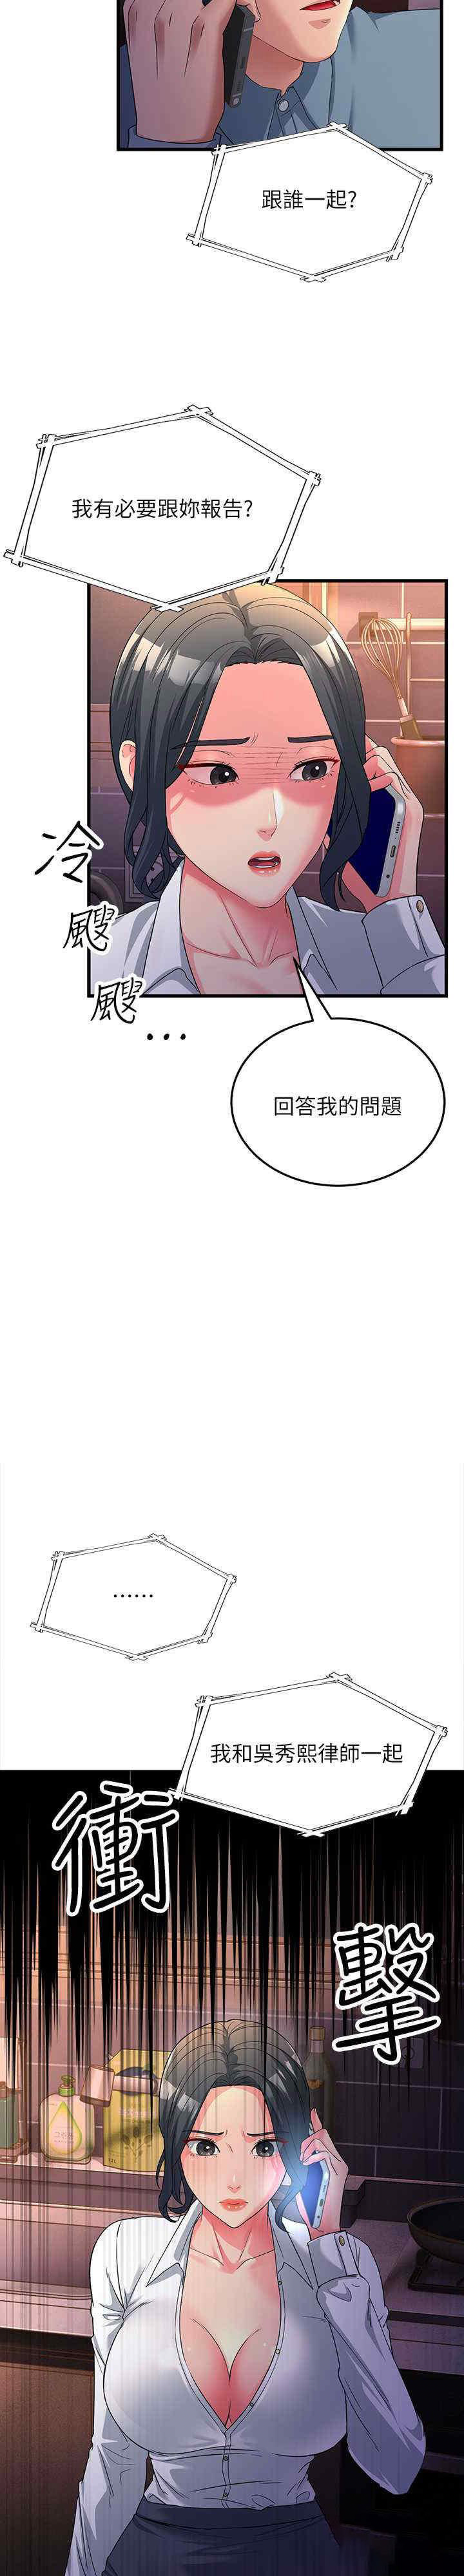 跑友变岳母  第17话_淫师开堂授课中 漫画图片2.jpg